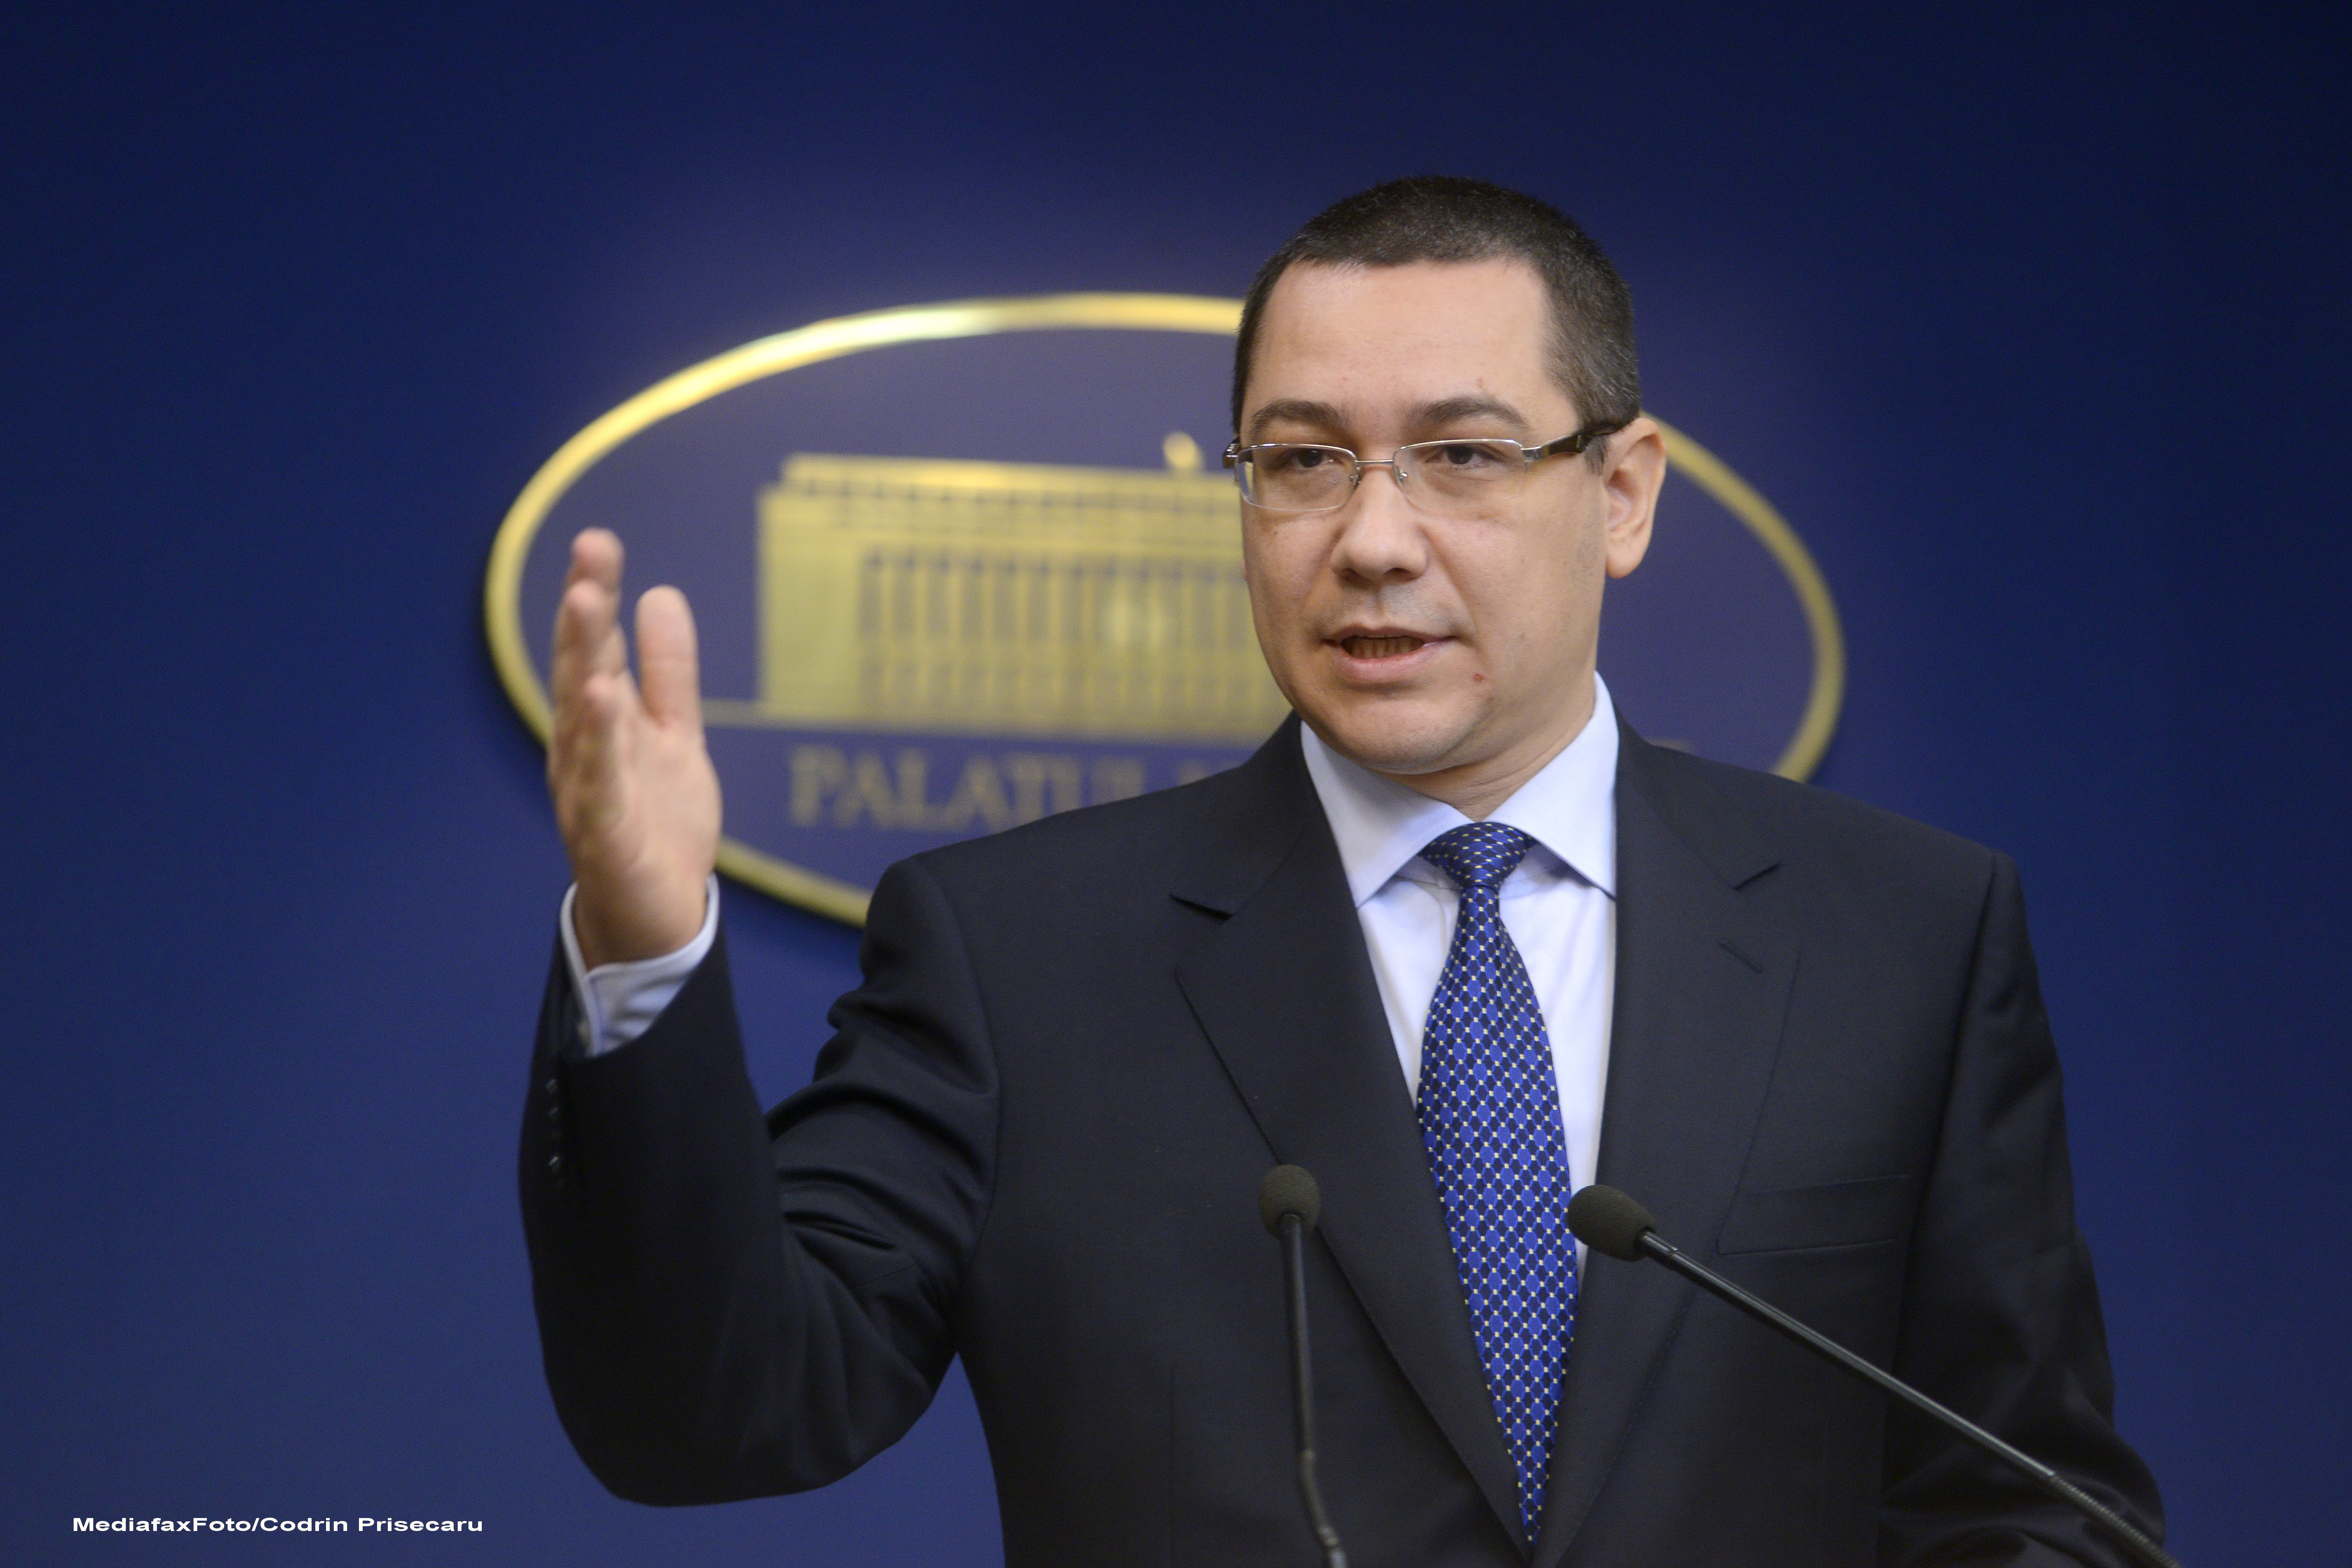 Imprumut de 4 miliarde de euro, pentru Romania. Premierul Ponta merge mai departe cu acciza pe combustibili